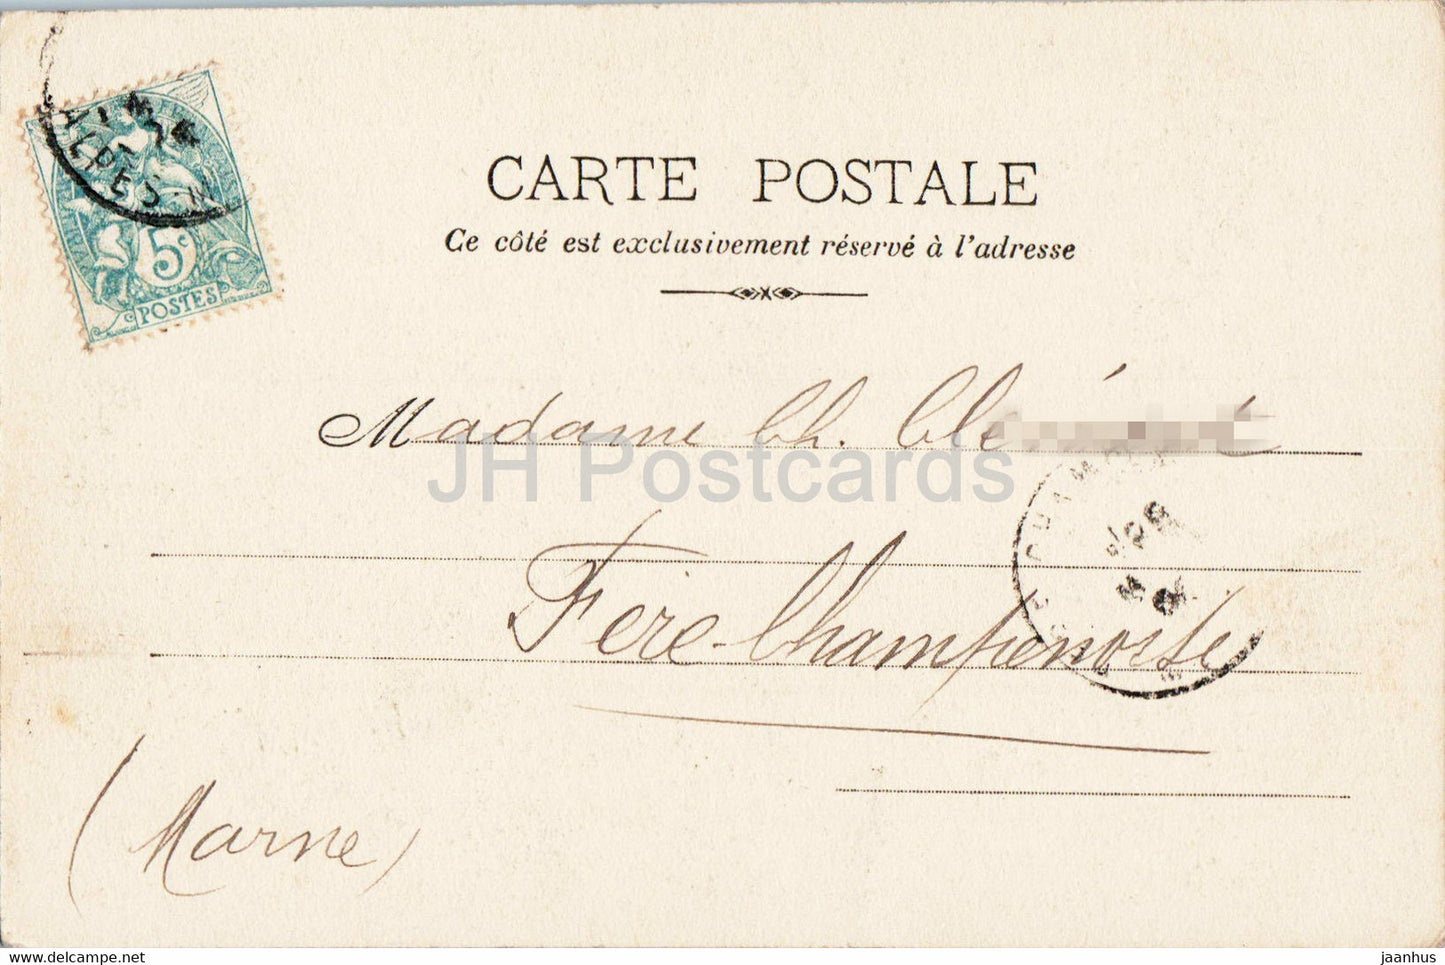 Beaulieu - Vue Générale - Vue prise de la petite Afrique - 328 - carte postale ancienne - France - oblitérée